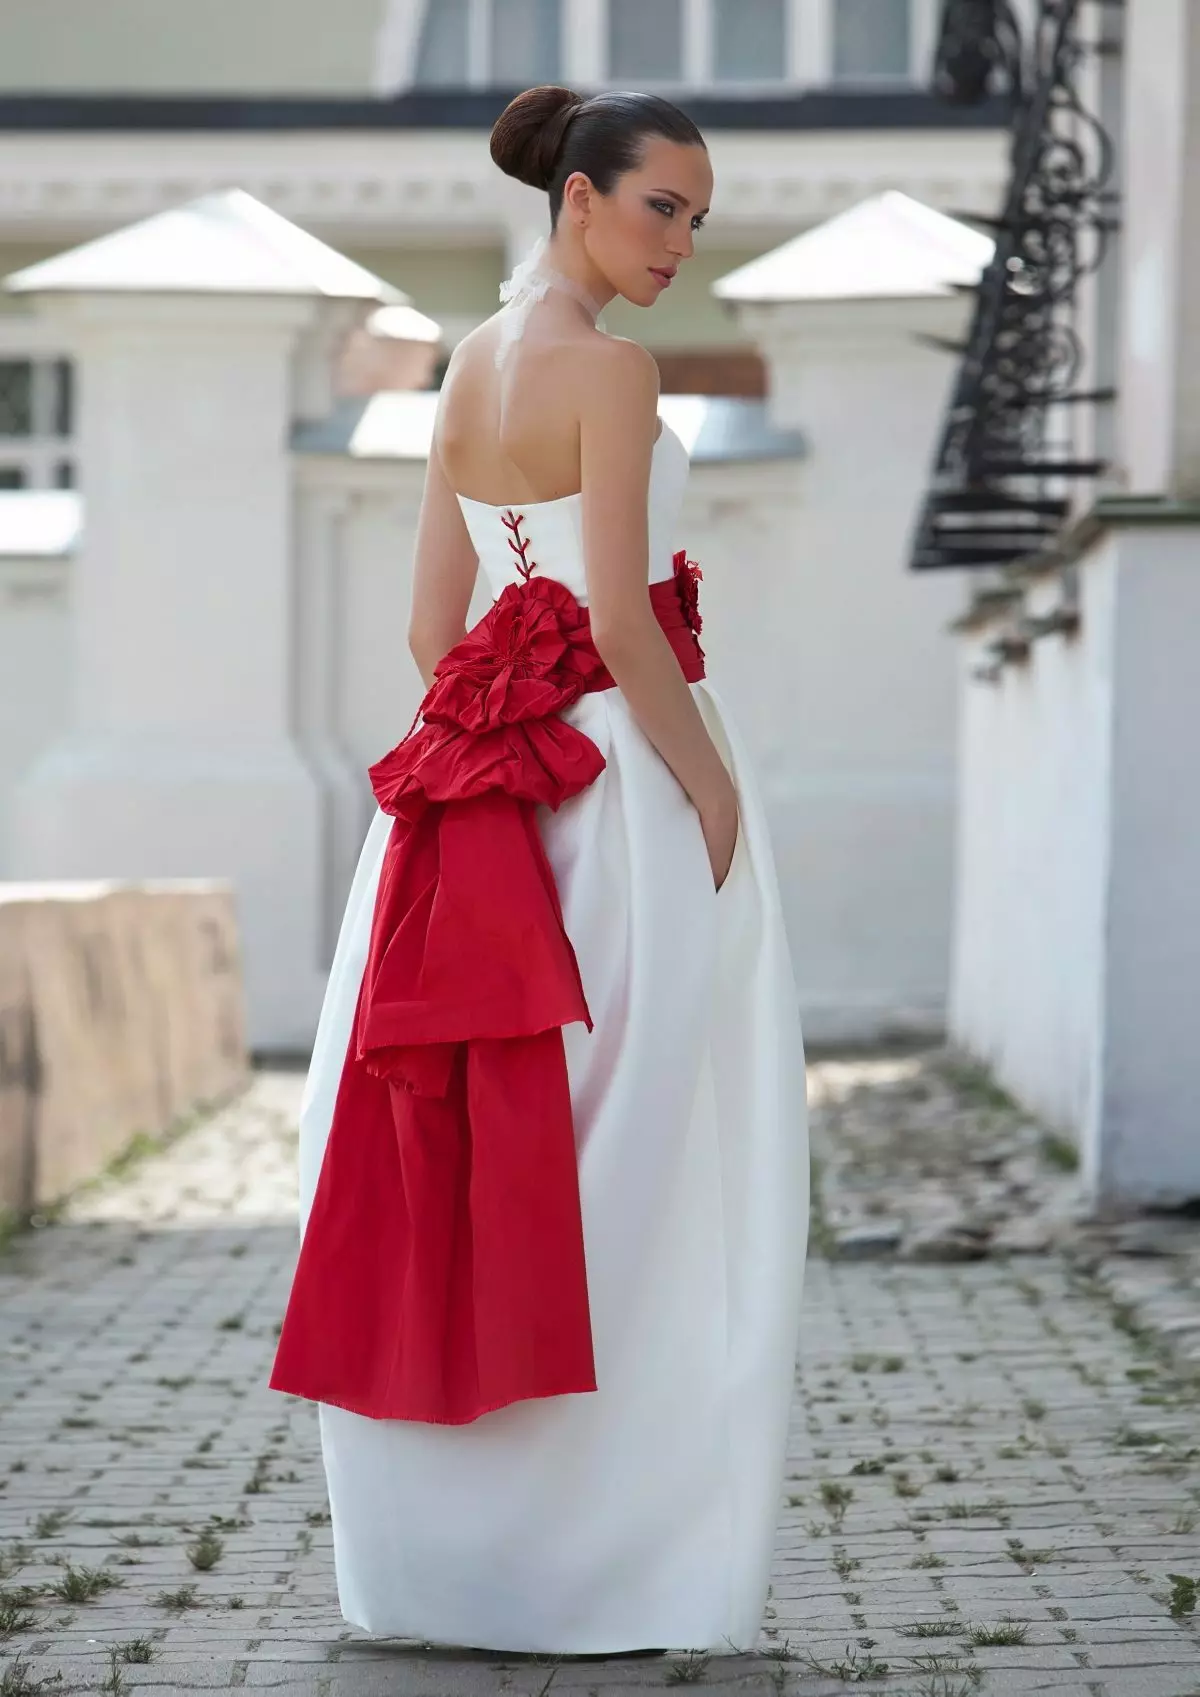 Buja esküvői ruha piros íjjal és kötéssel